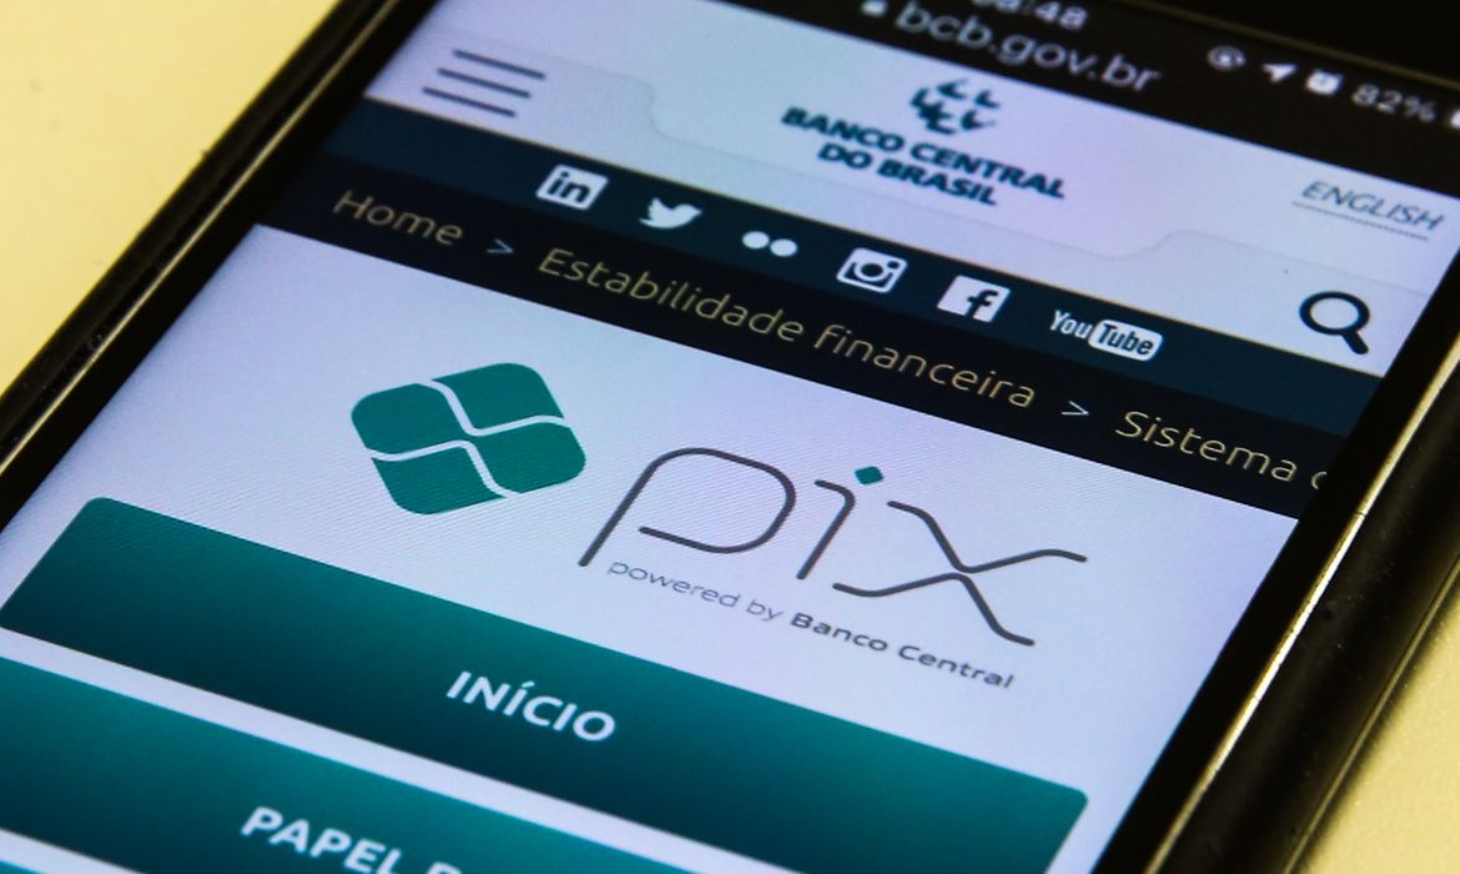 Pix poderá ser usado em aplicativos de mensagens e compras online | Jornal da Orla